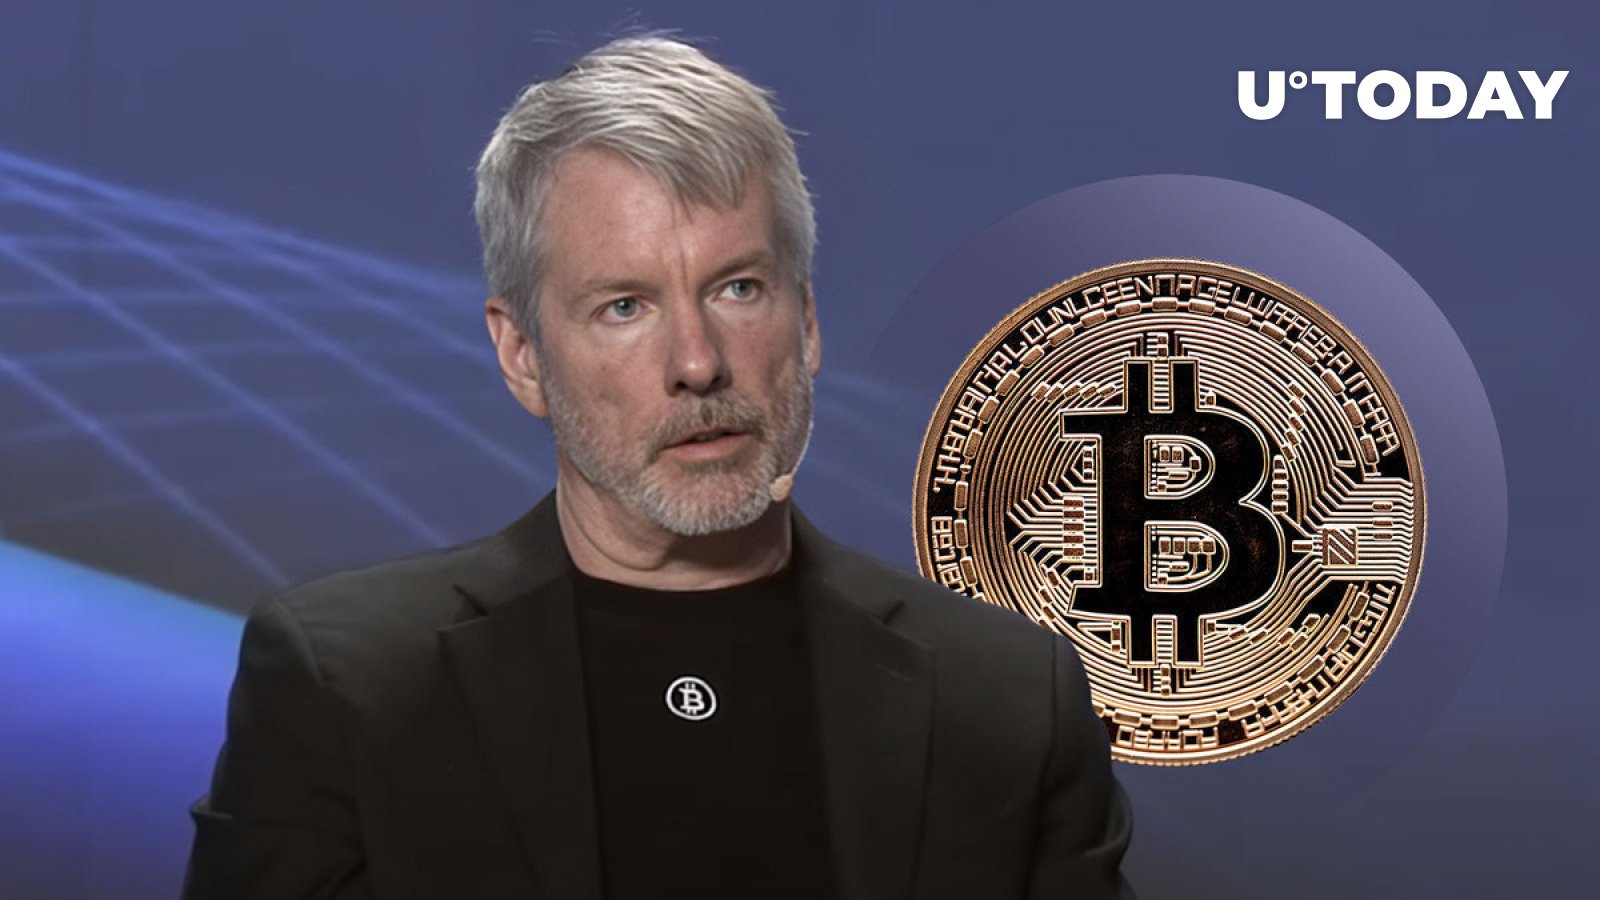 Michael Saylor Makes Surprising Claim About Meme Bitcoin (BTC)